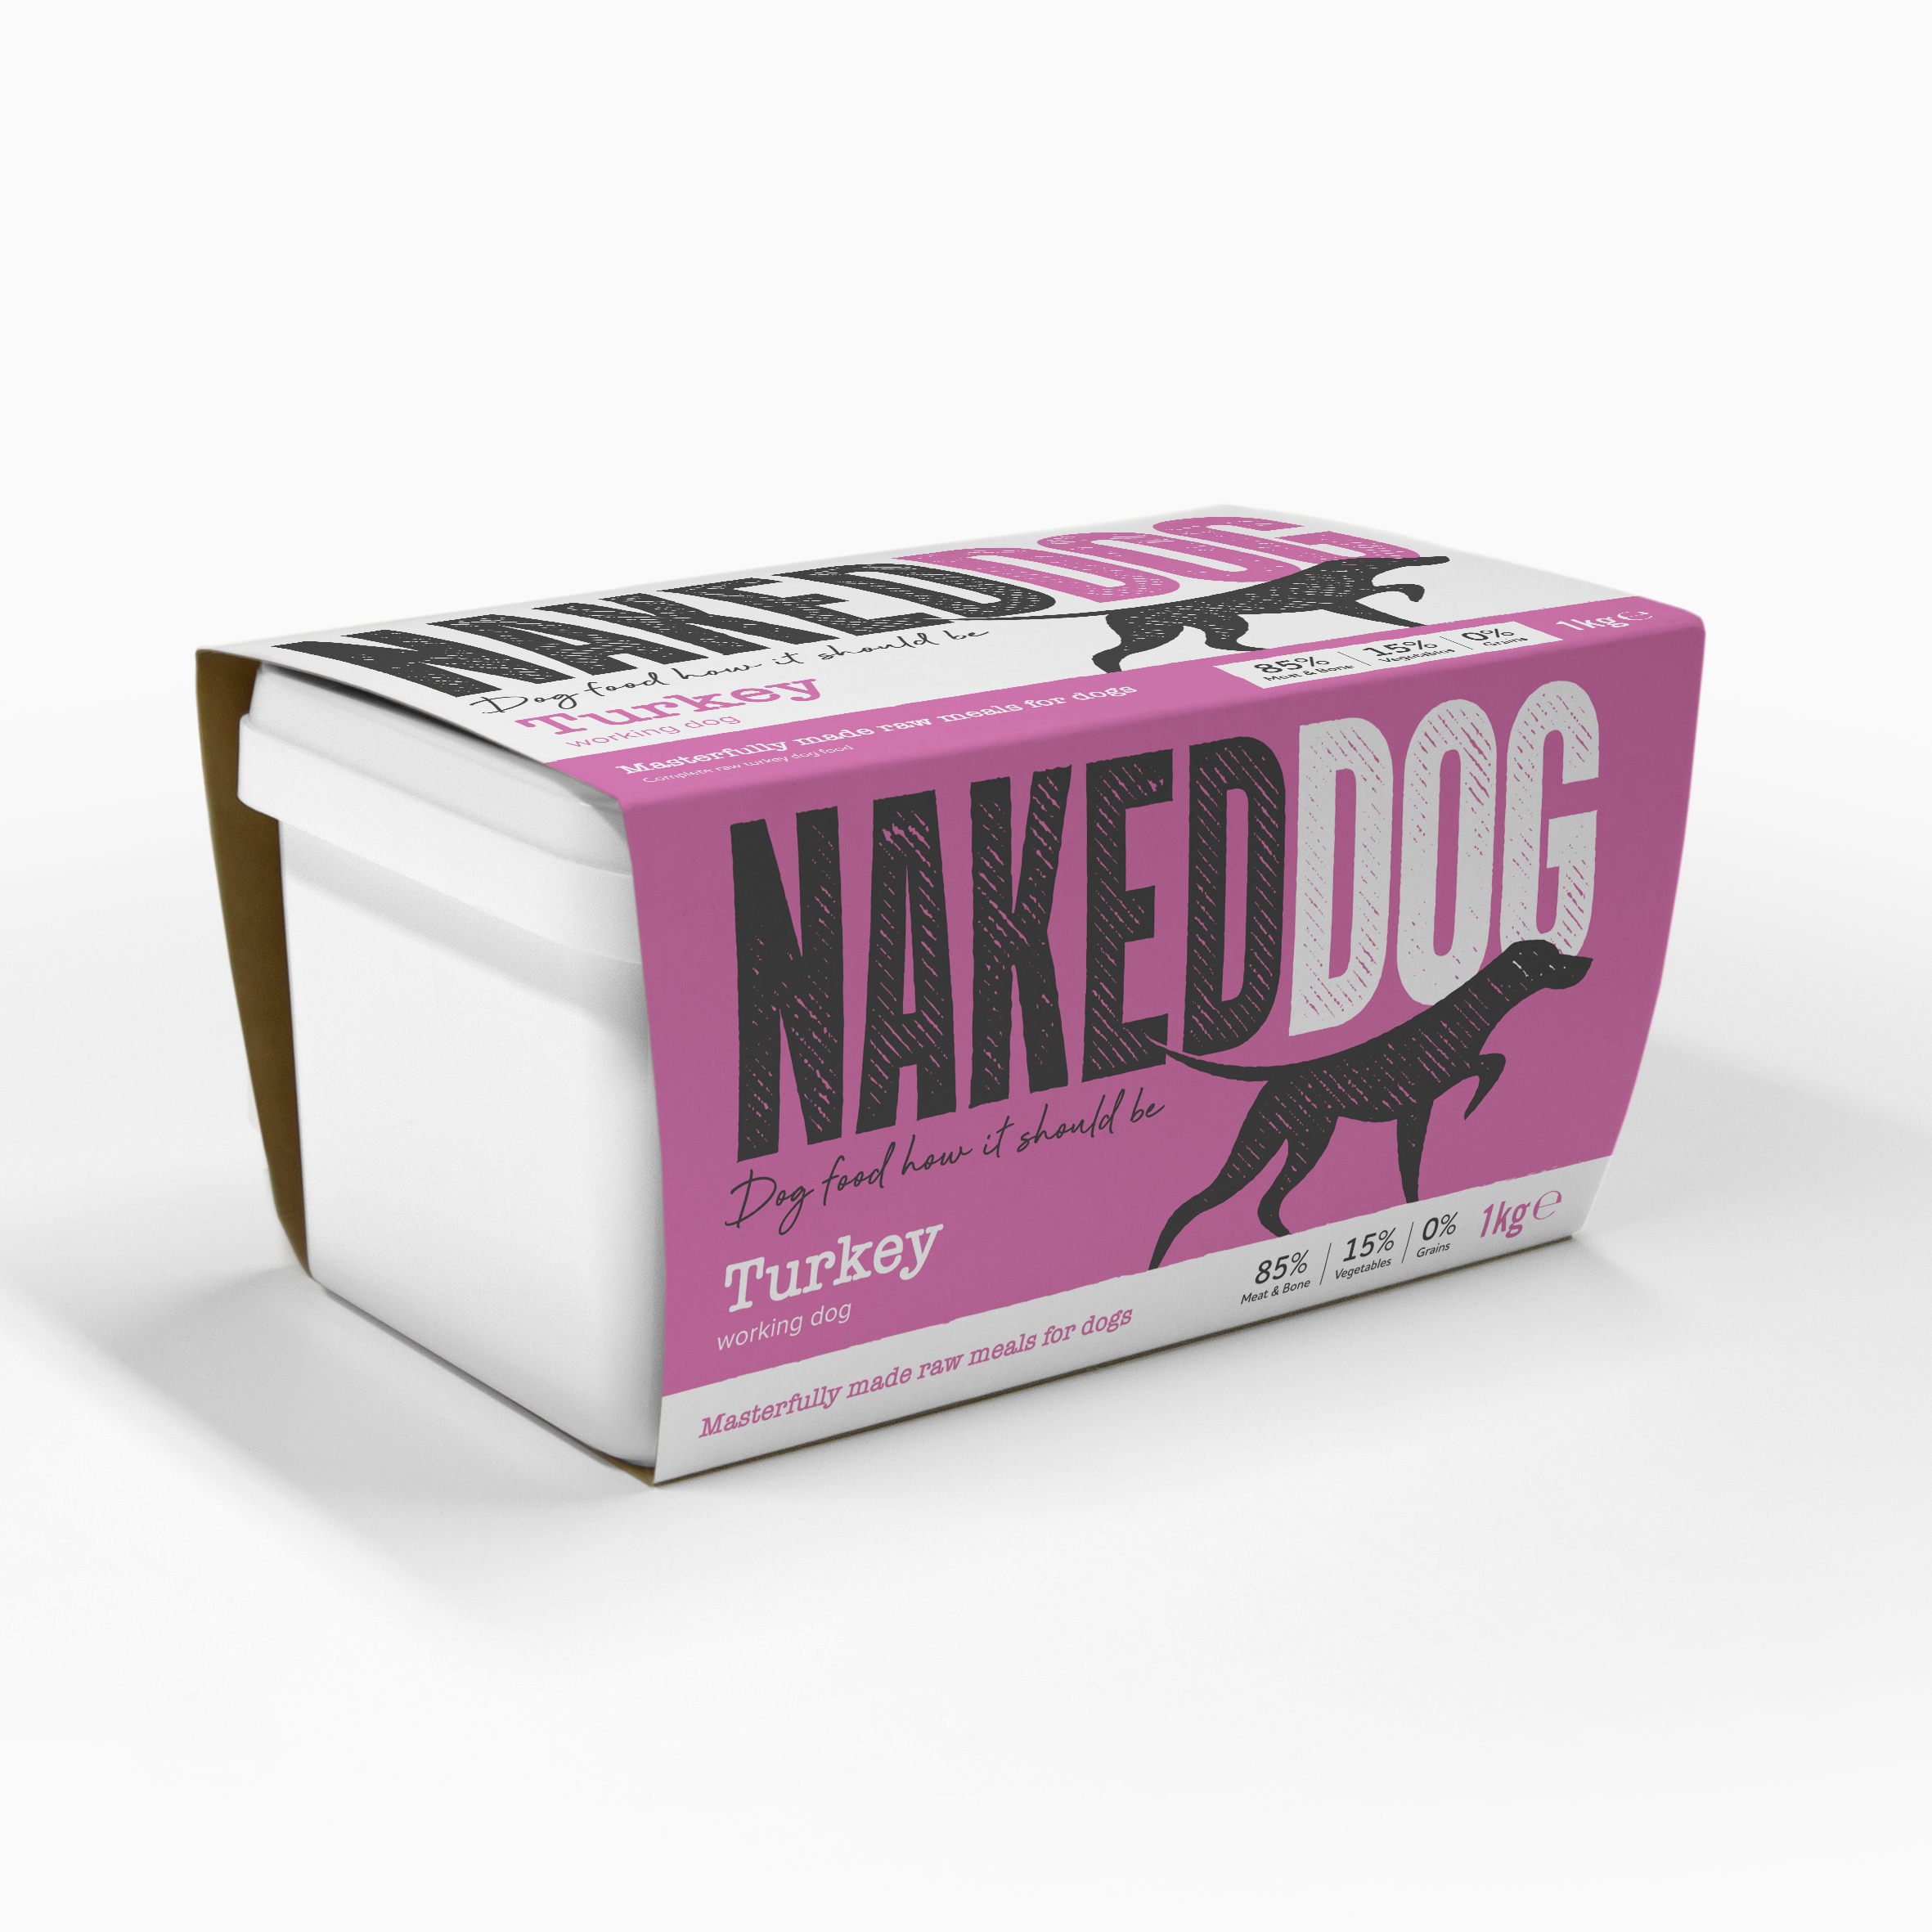 Naked Dog_product image-1kg pack_Turkey.